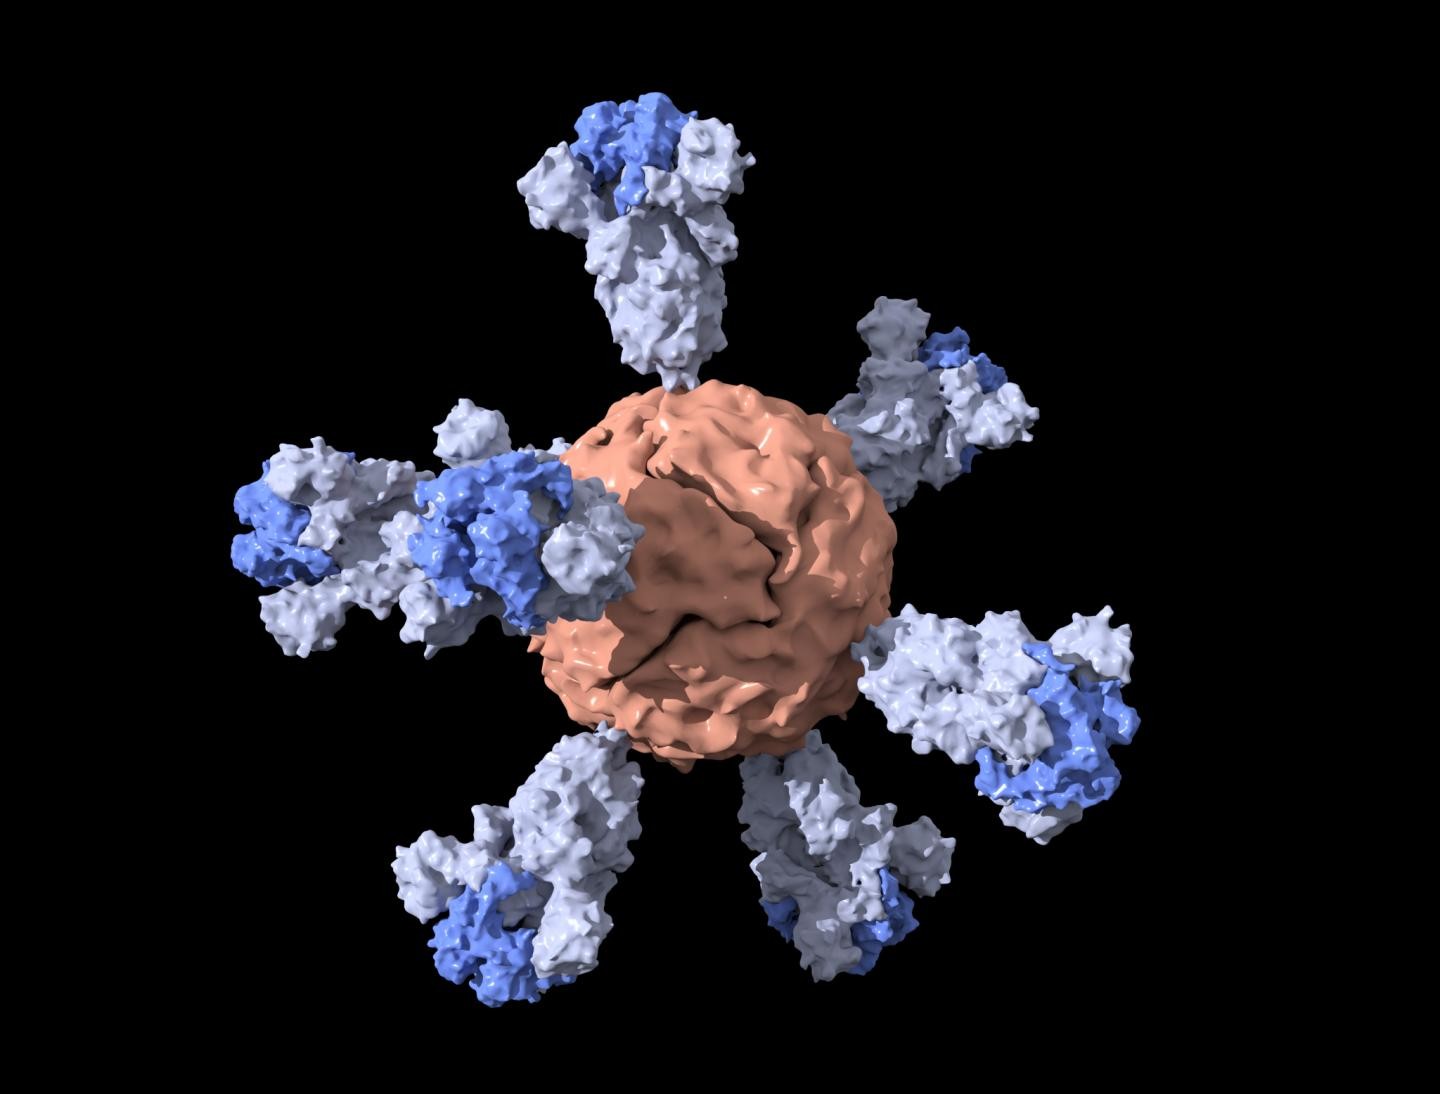 Visualização da nanopartícula de ferritina cravejada com partículas da proteína spike do novo coronavírus, utilizada em candidata a vacina testada na Universidade Stanford (Foto: Duo Xu)